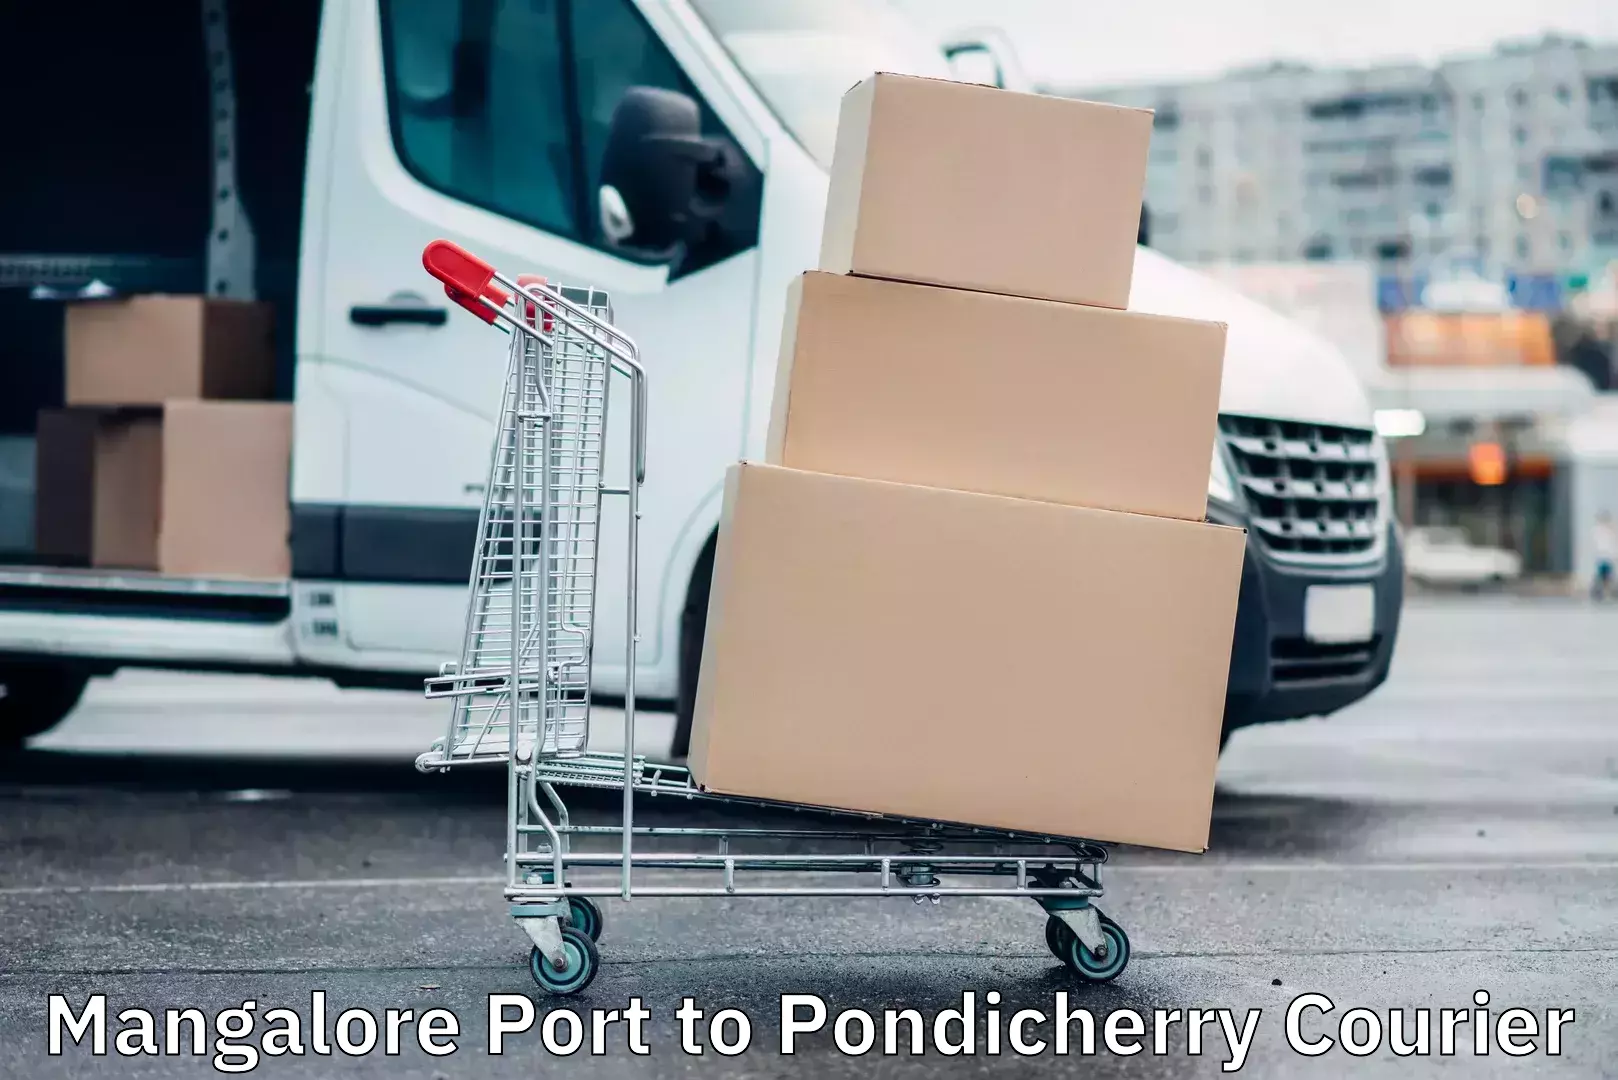 Efficient cargo handling in Mangalore Port to Pondicherry